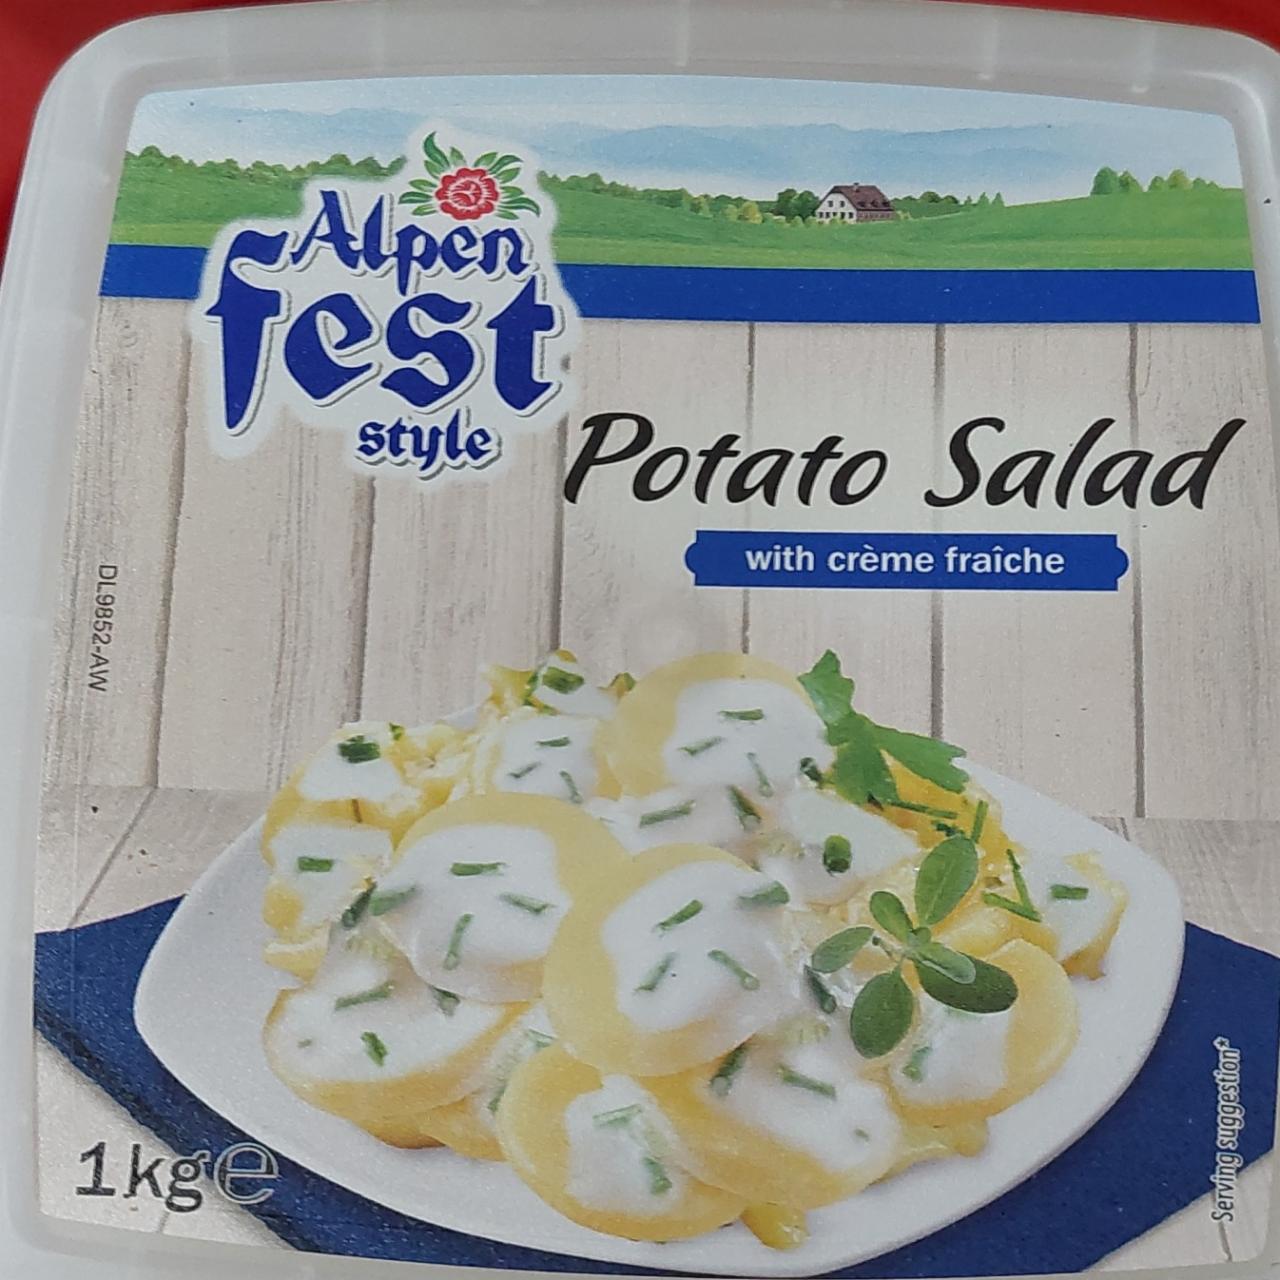 Képek - Potato salad with creme fraiche Alpen Fest